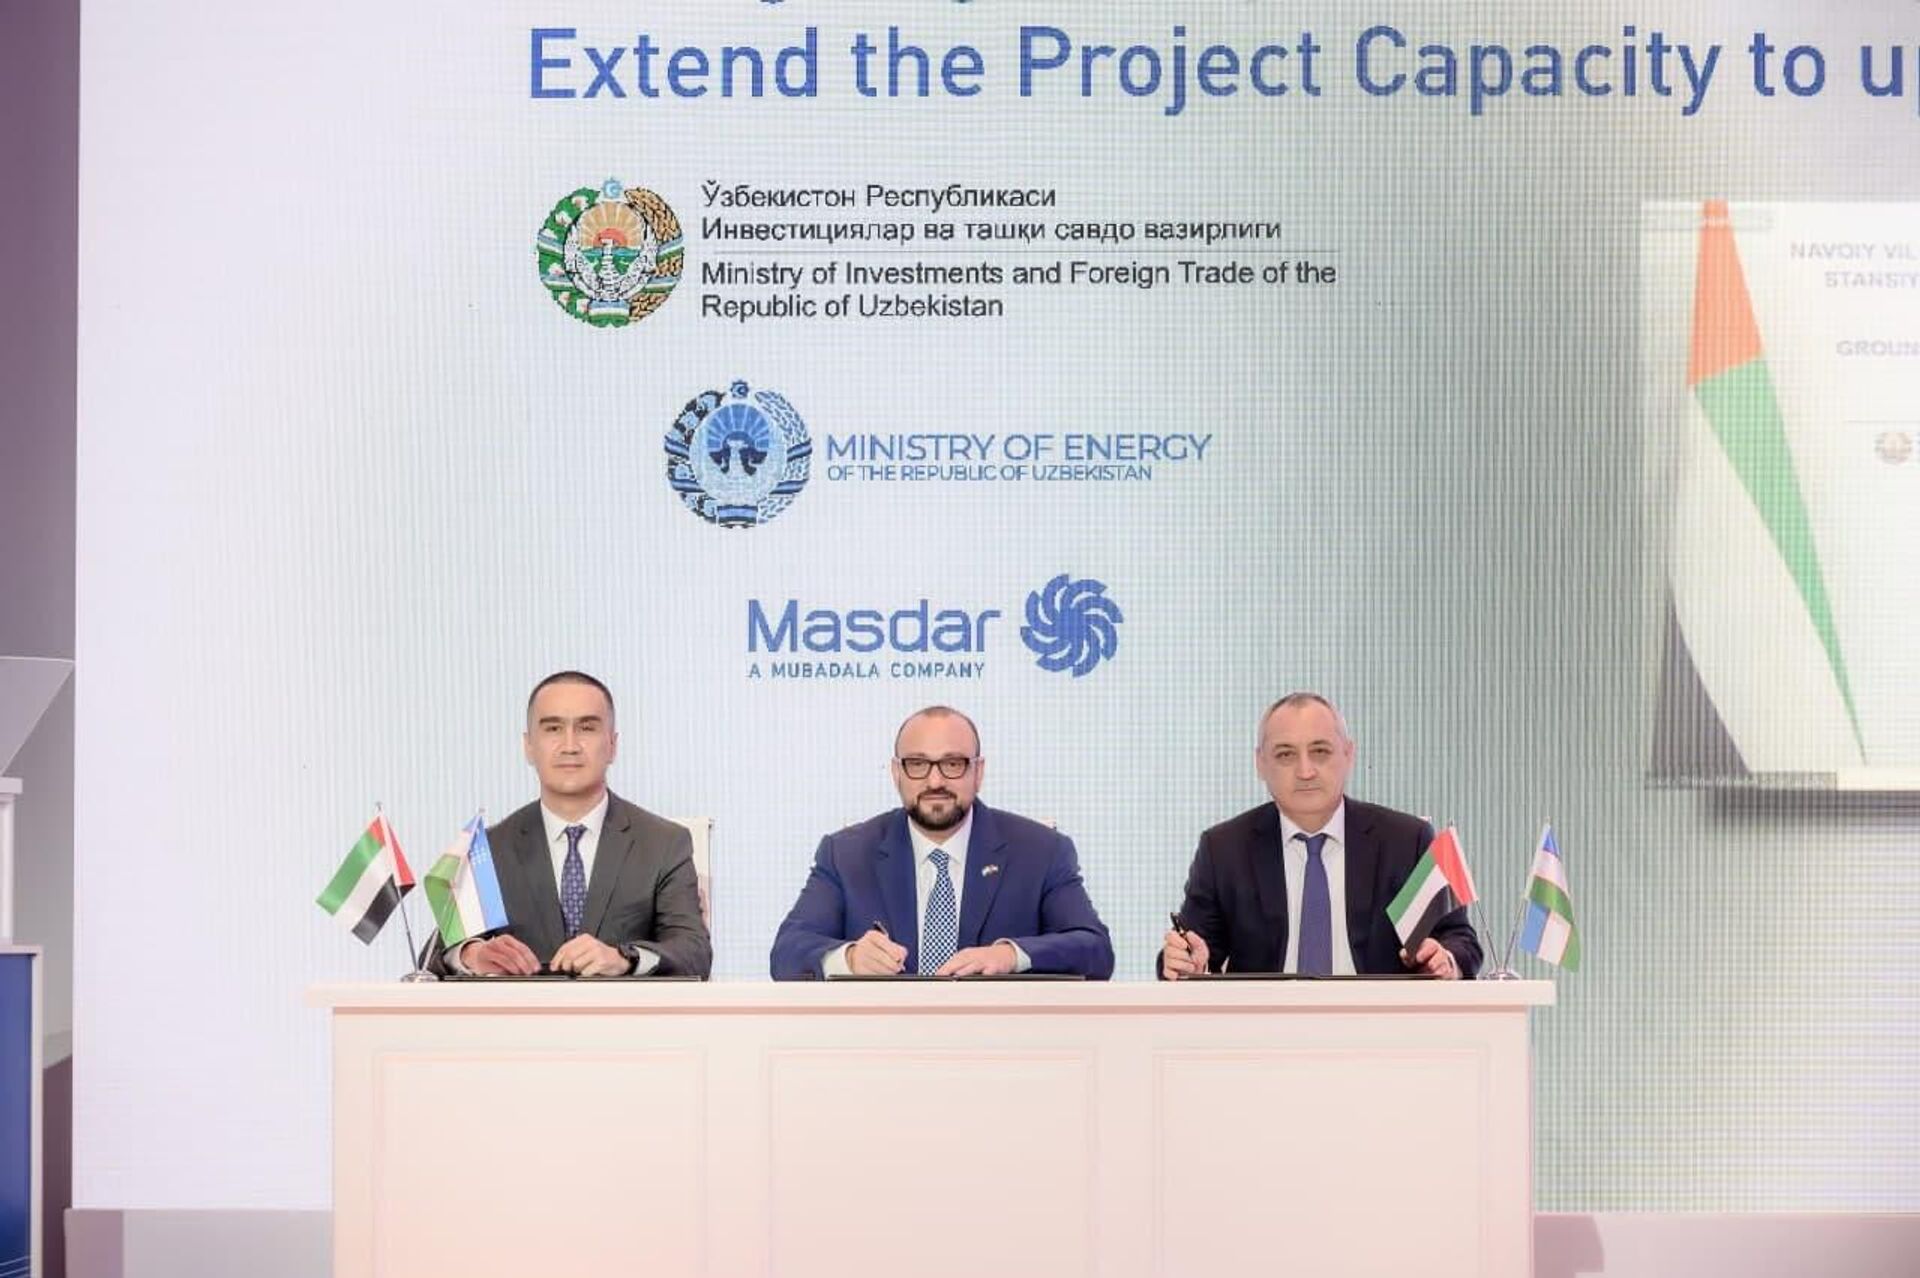 Подписание соглашения с компанией Masdar (ОАЭ) об увеличении проектной мощности строящейся в Узбекистане ВЭС в три раза - Sputnik Узбекистан, 1920, 02.04.2021